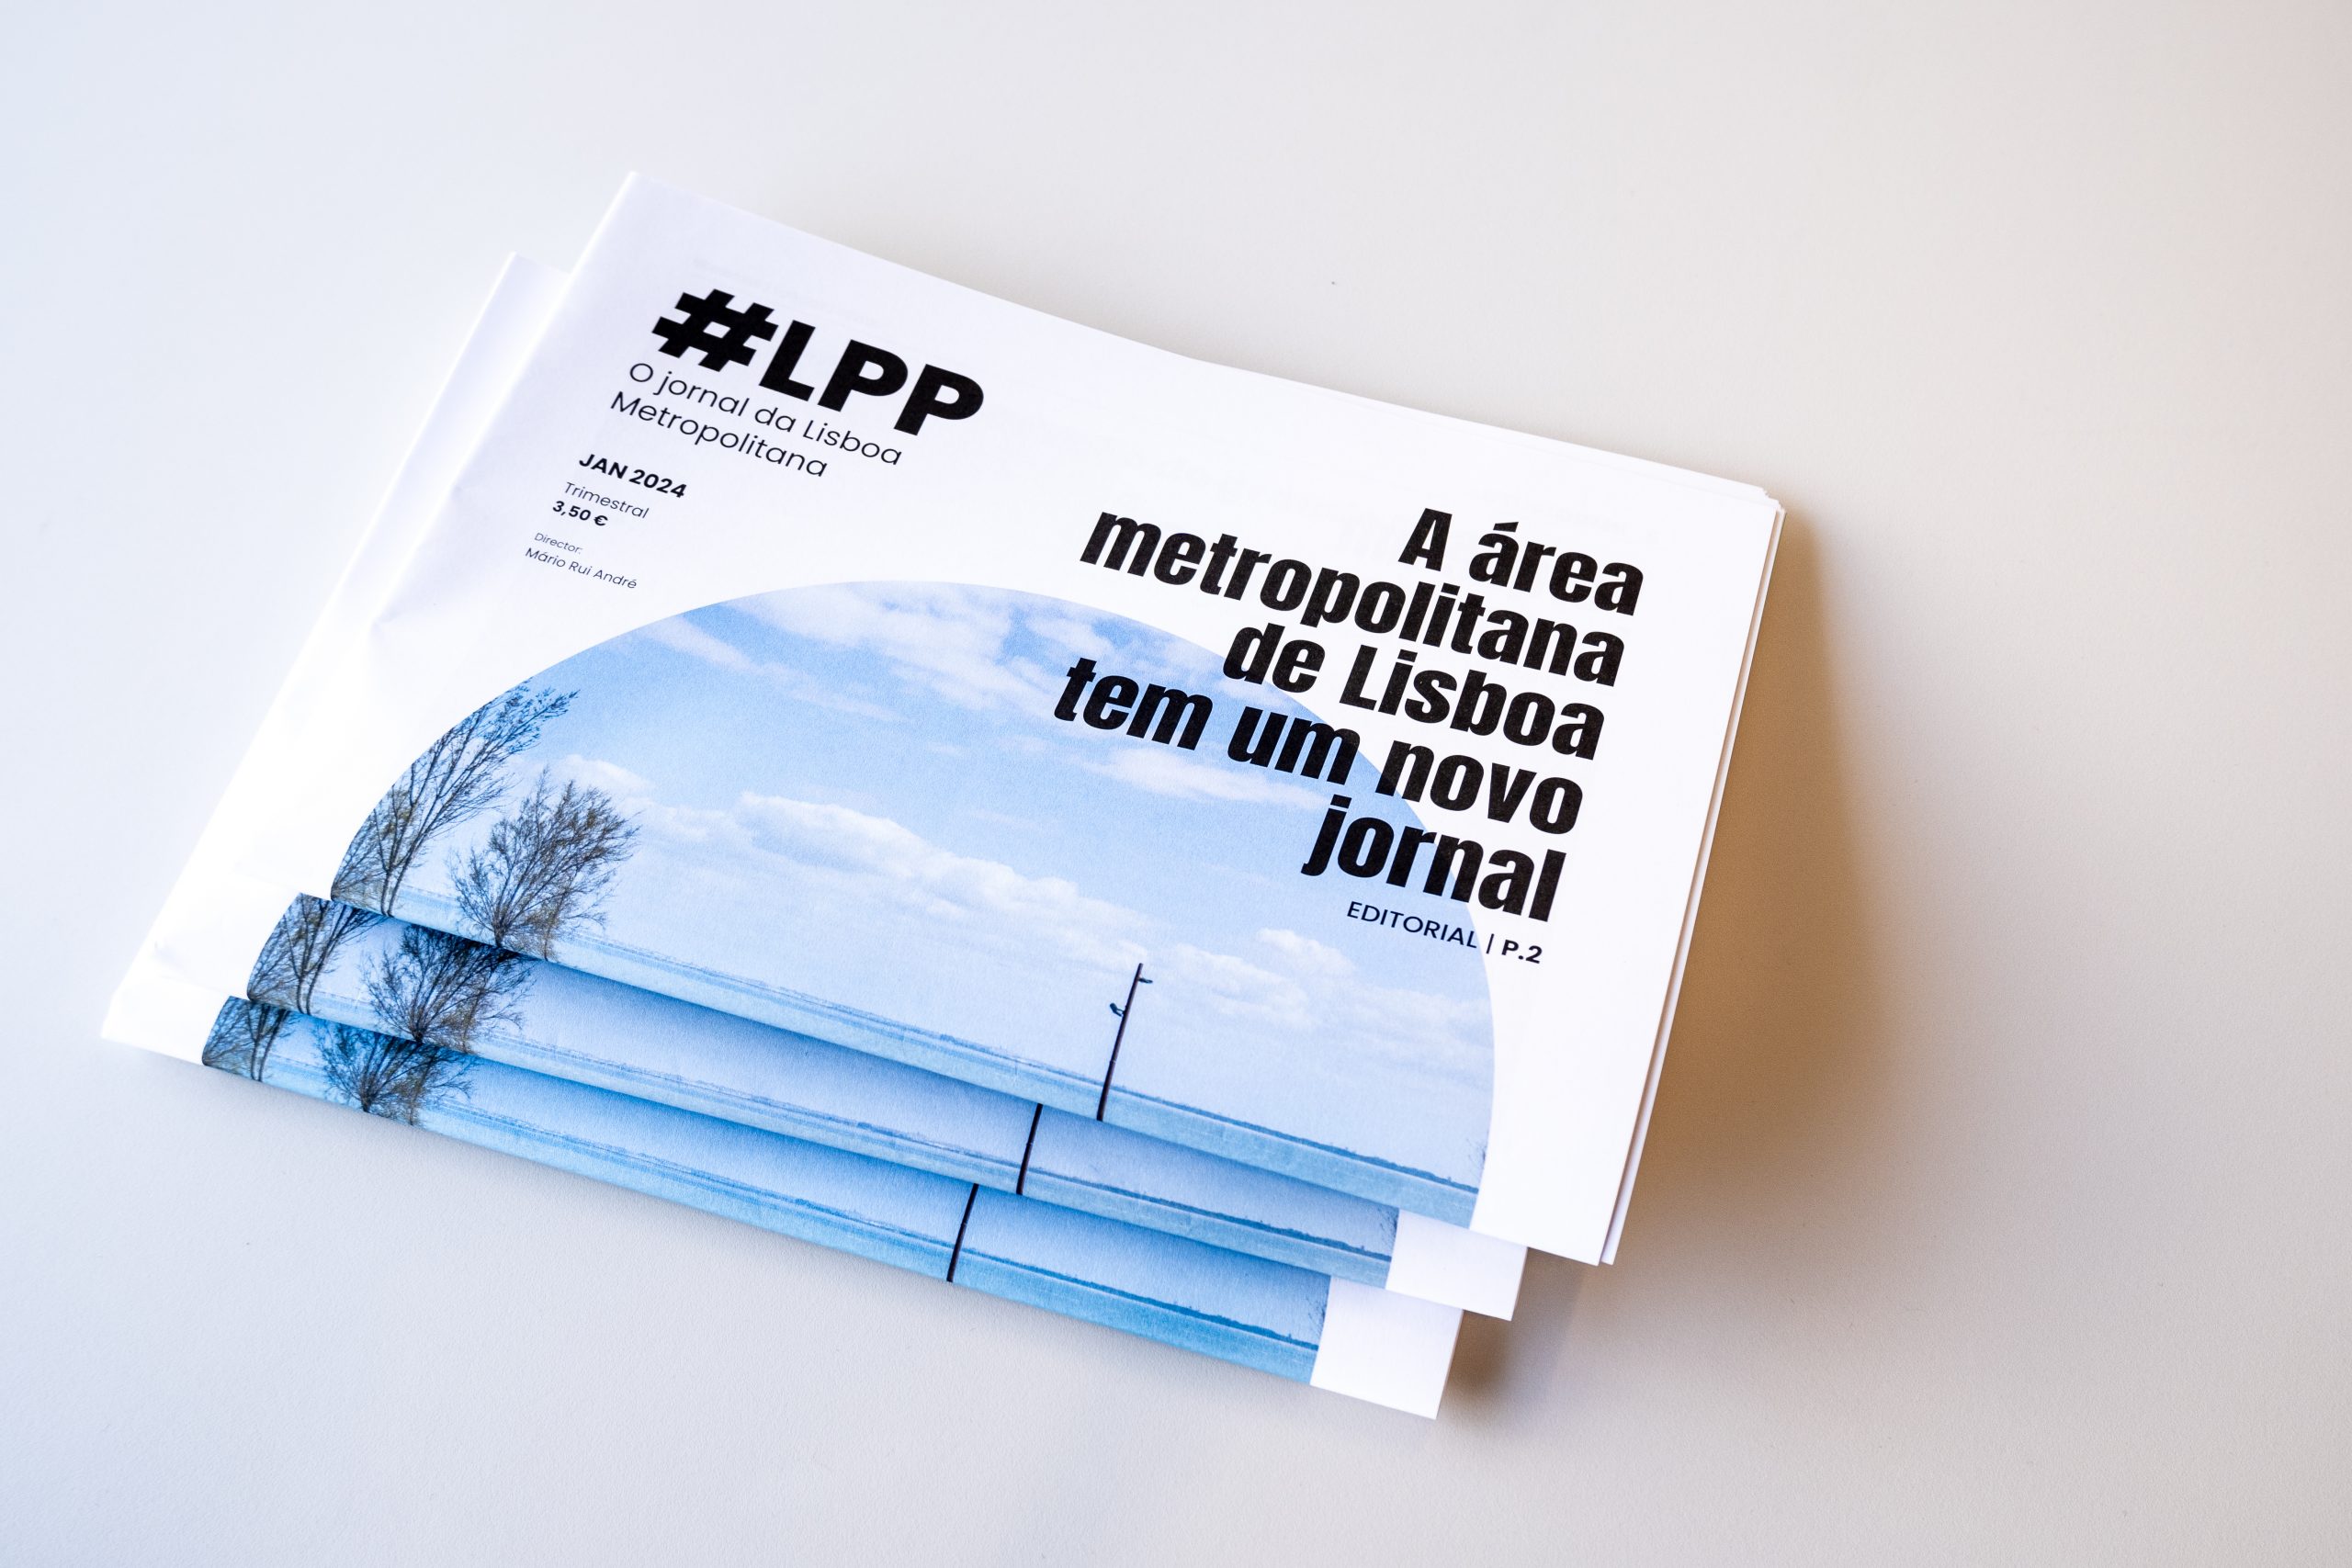 Área metropolitana de Lisboa tem um novo jornal trimestral